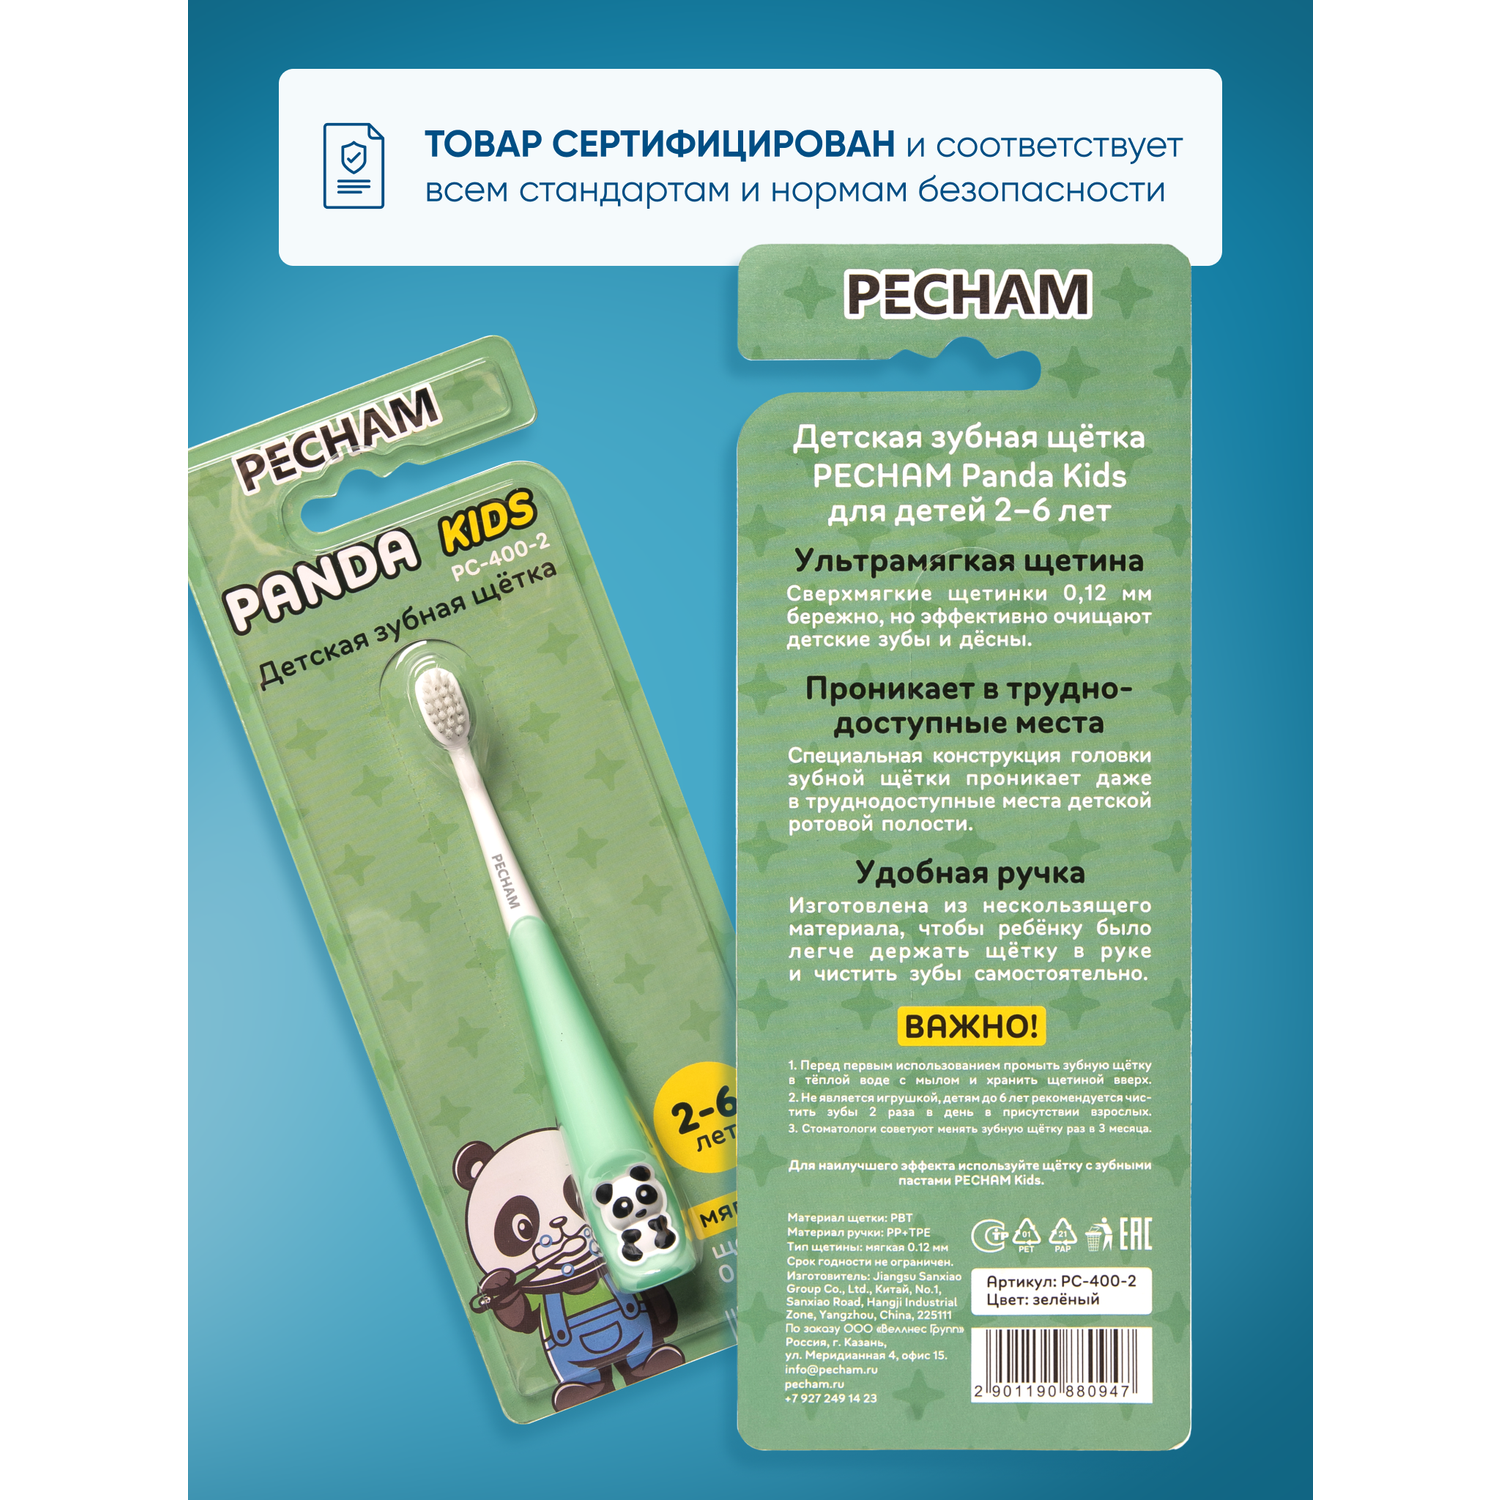 Детская зубная щетка PECHAM Panda Kids PC-400-2 - фото 6